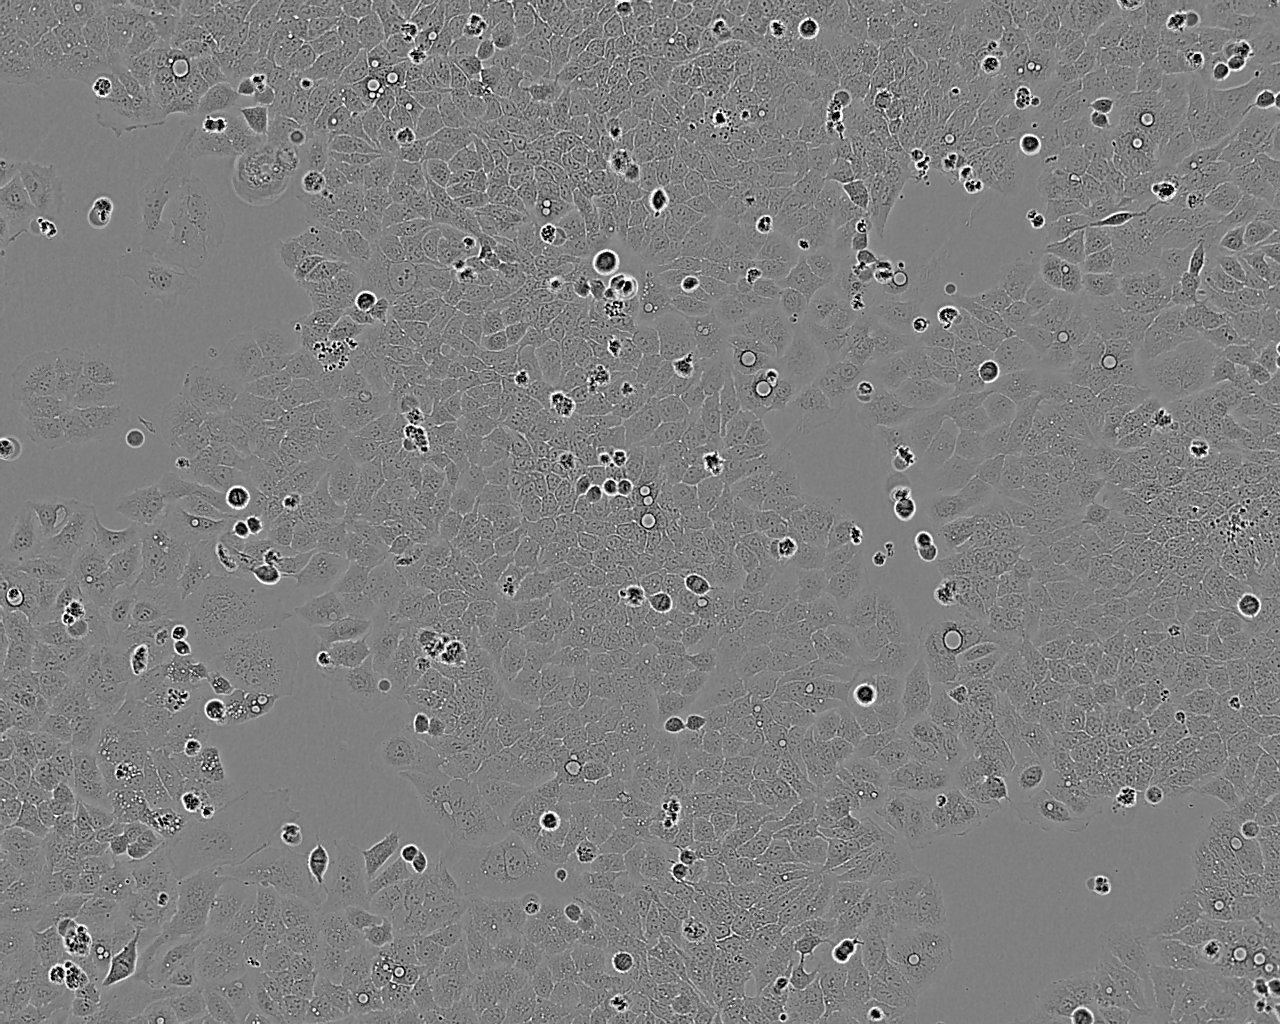 HSC-1 epithelioid cells人皮肤鳞癌细胞系